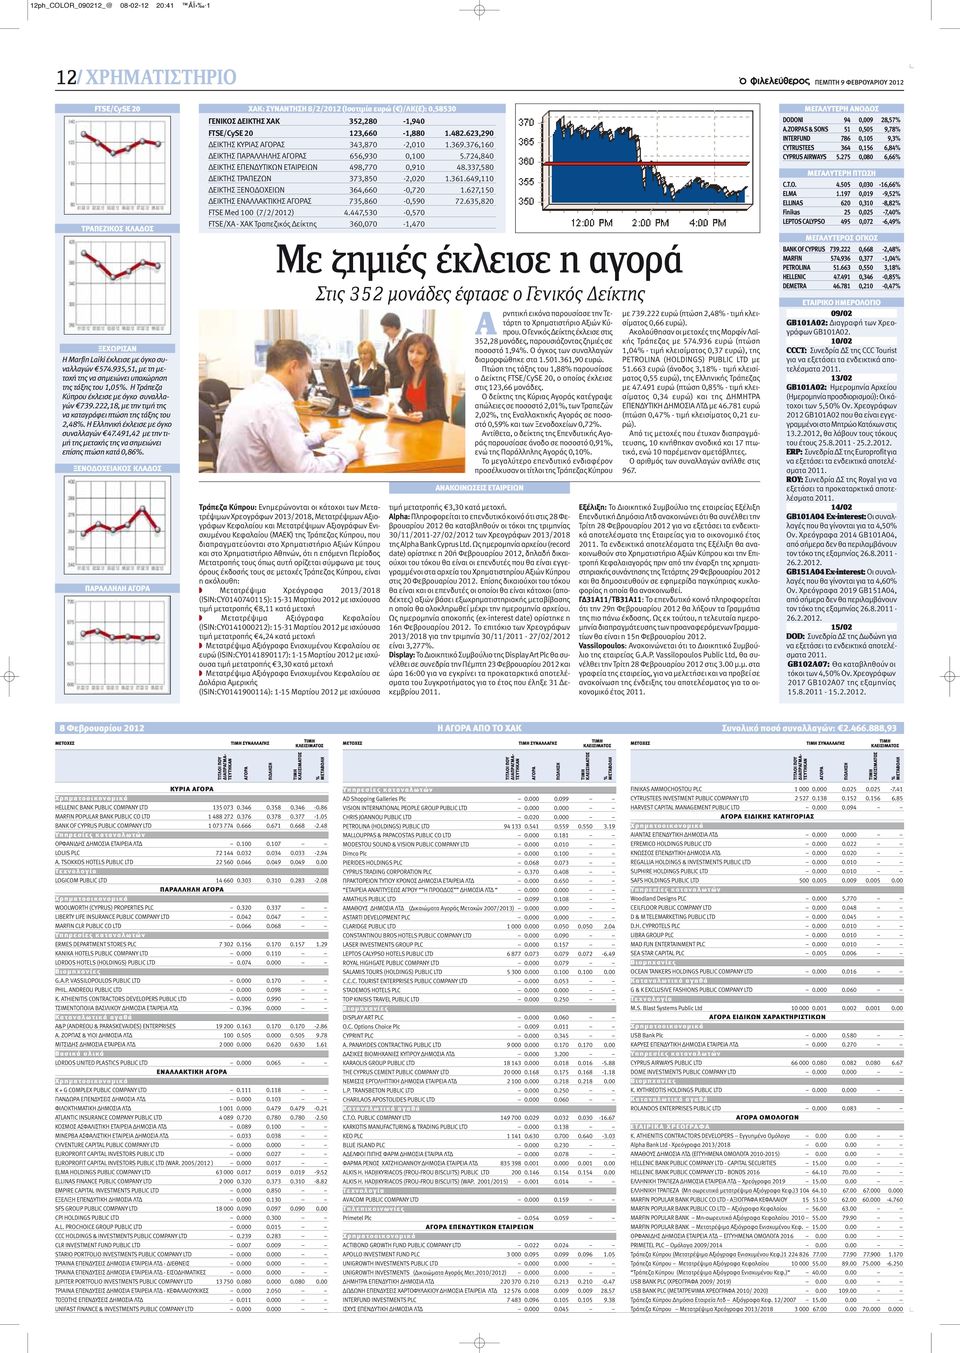 Η Ελληνική έκλεισε με όγκο συναλλαγών 47.491,42 με την τιμή της μετοχής της να σημειώνει επίσης πτώση κατά 0,86%.